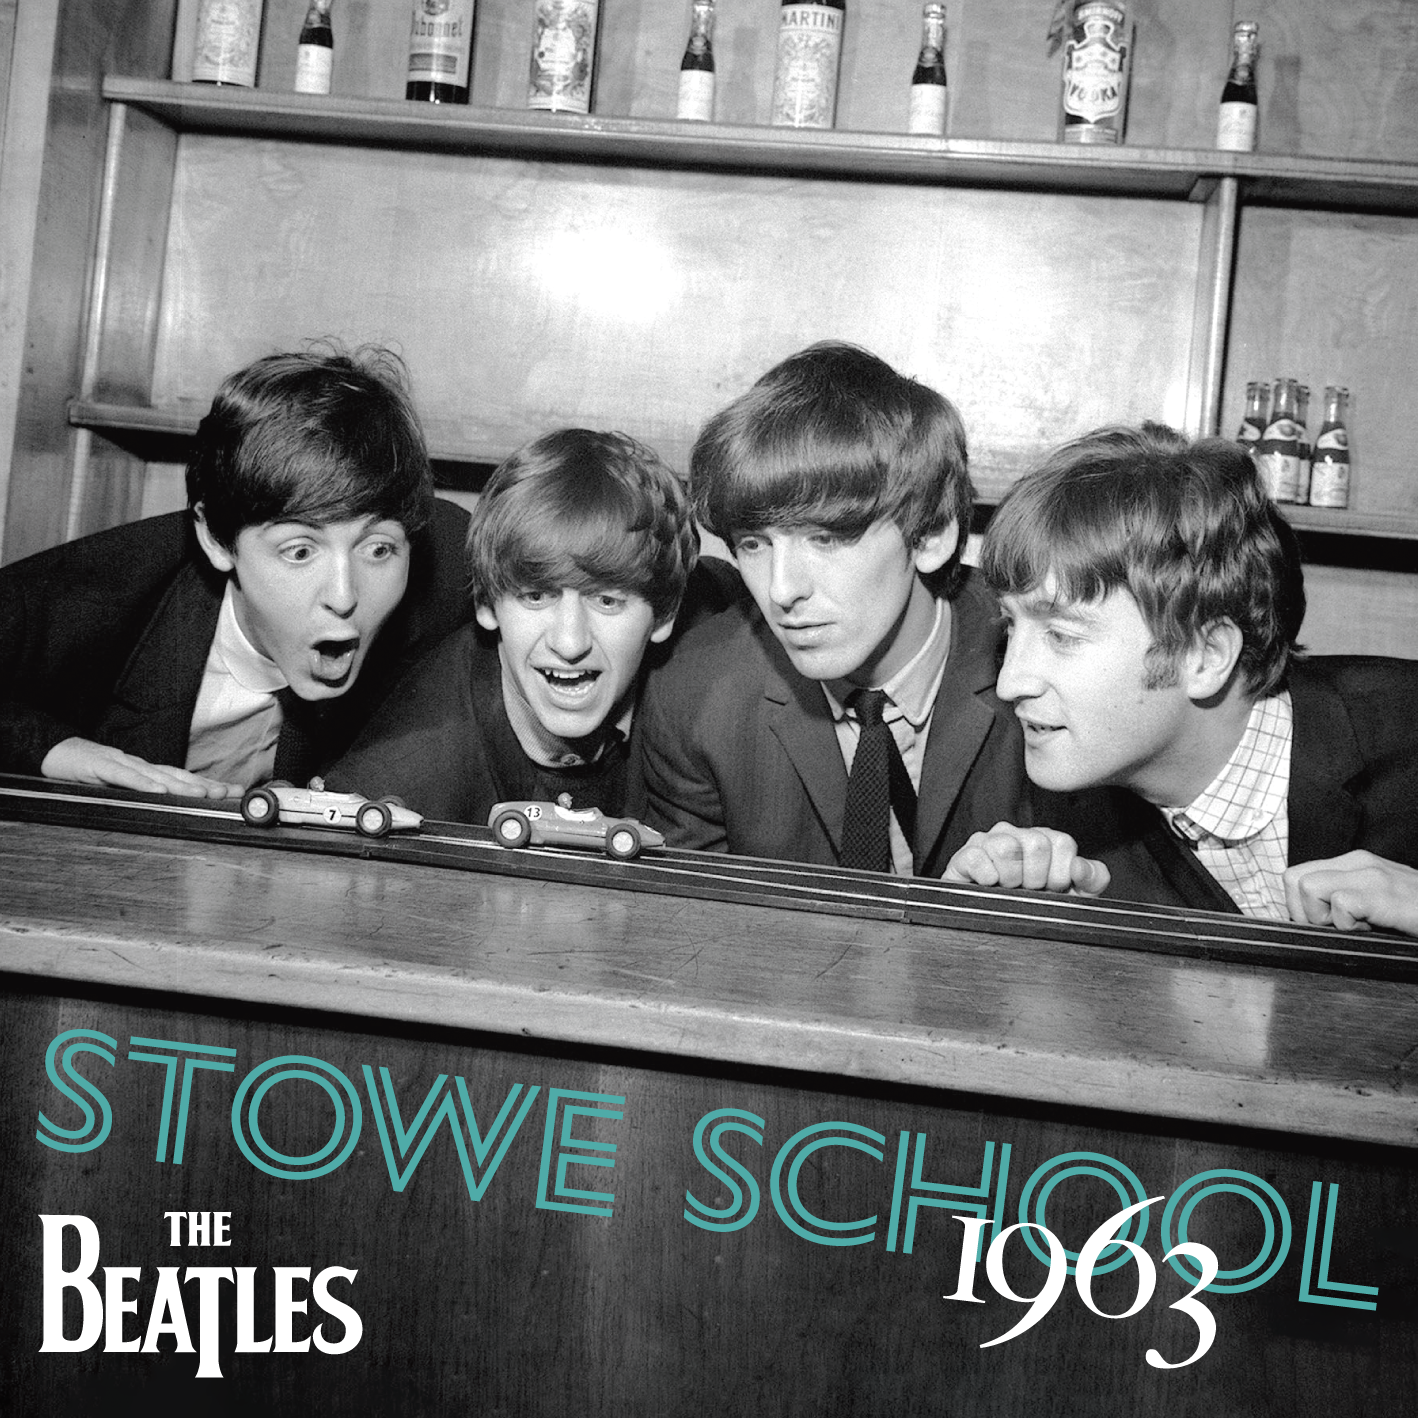 THE BEATLES / STOWE SCHOOL 1963